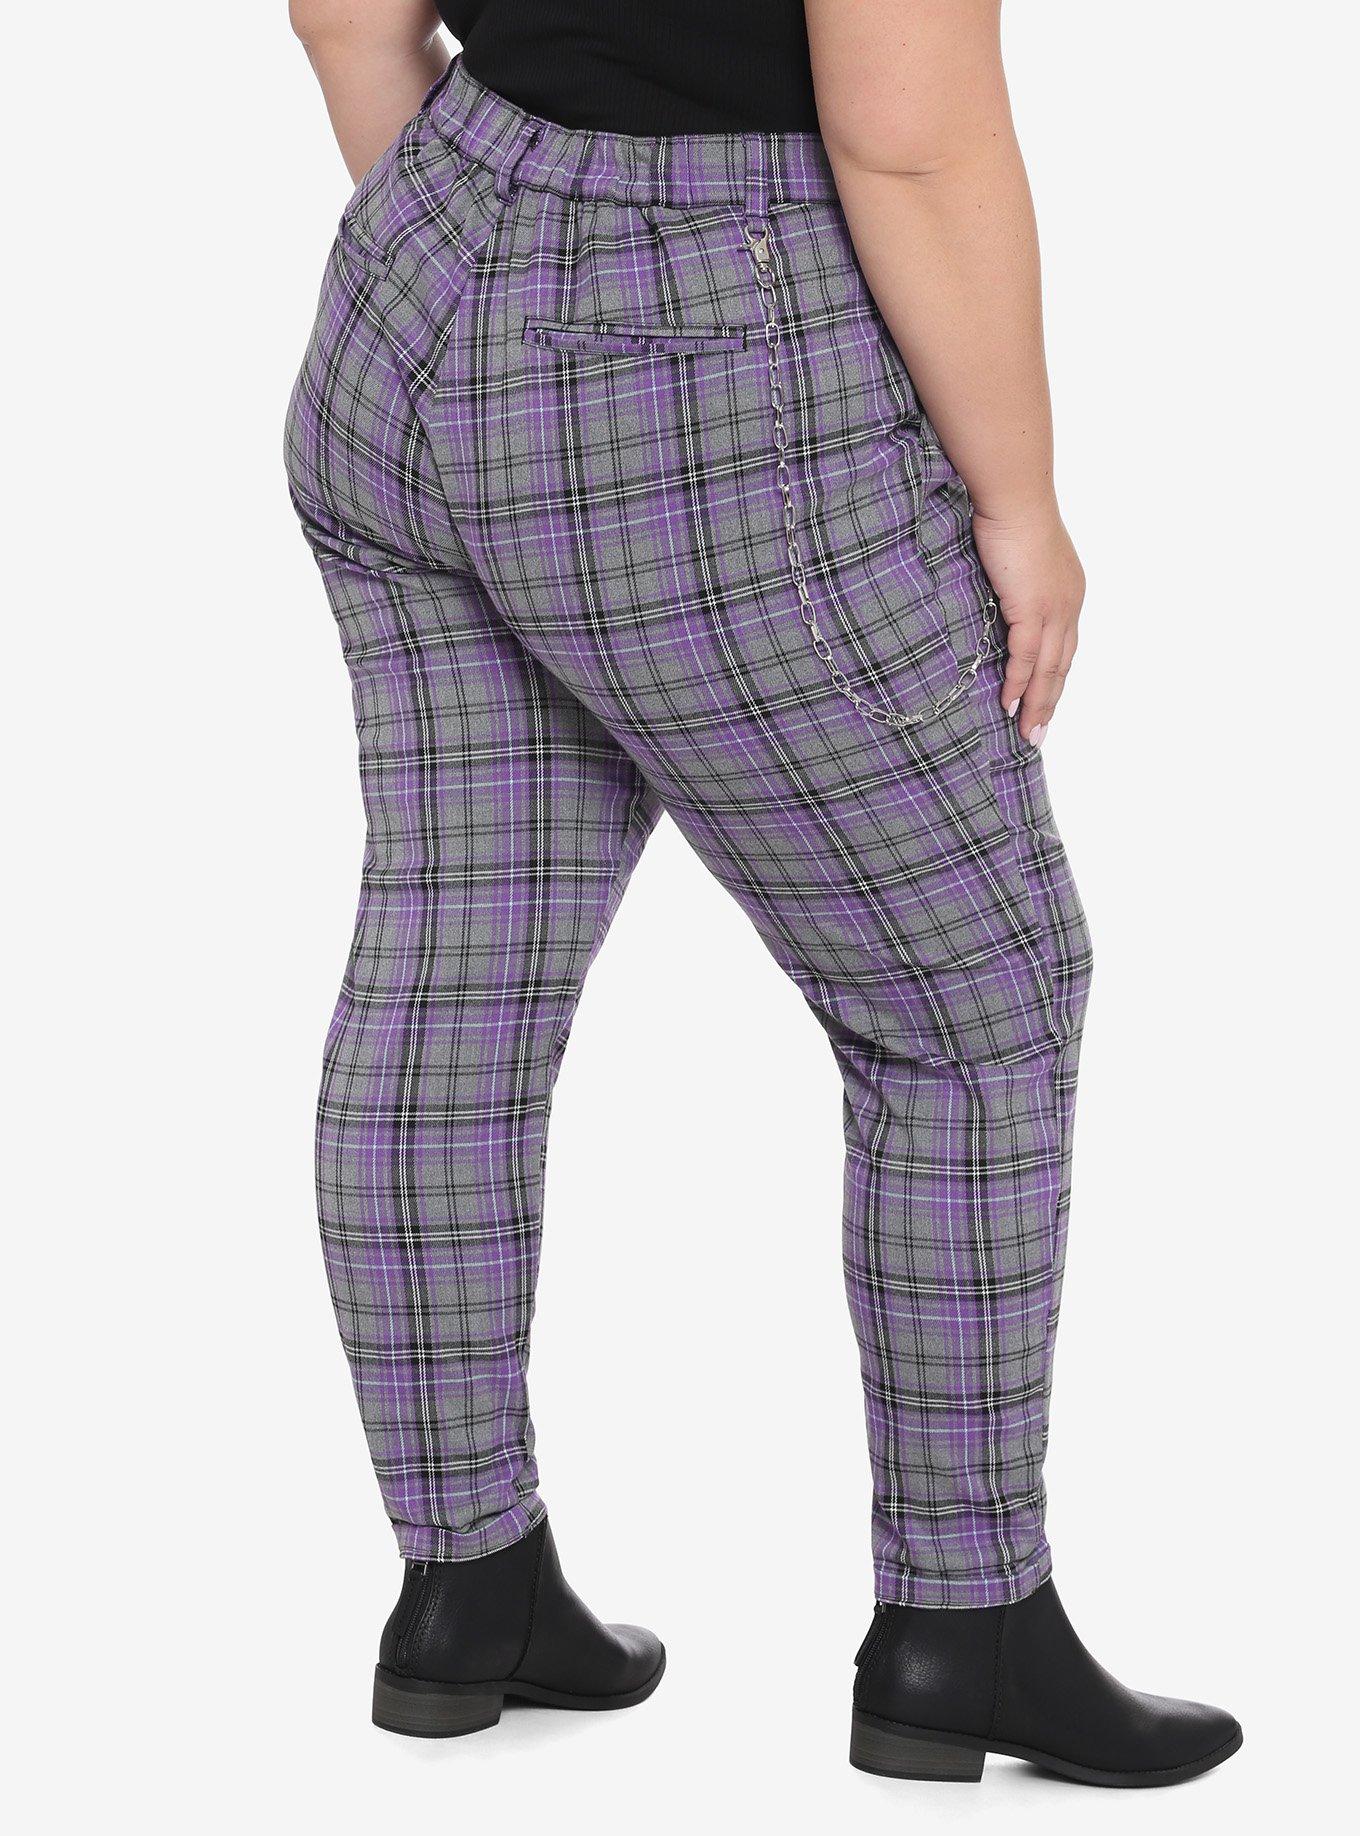 Purple & Grey Plaid Pants With Detachable Chain Plus Size, PLAID, alternate